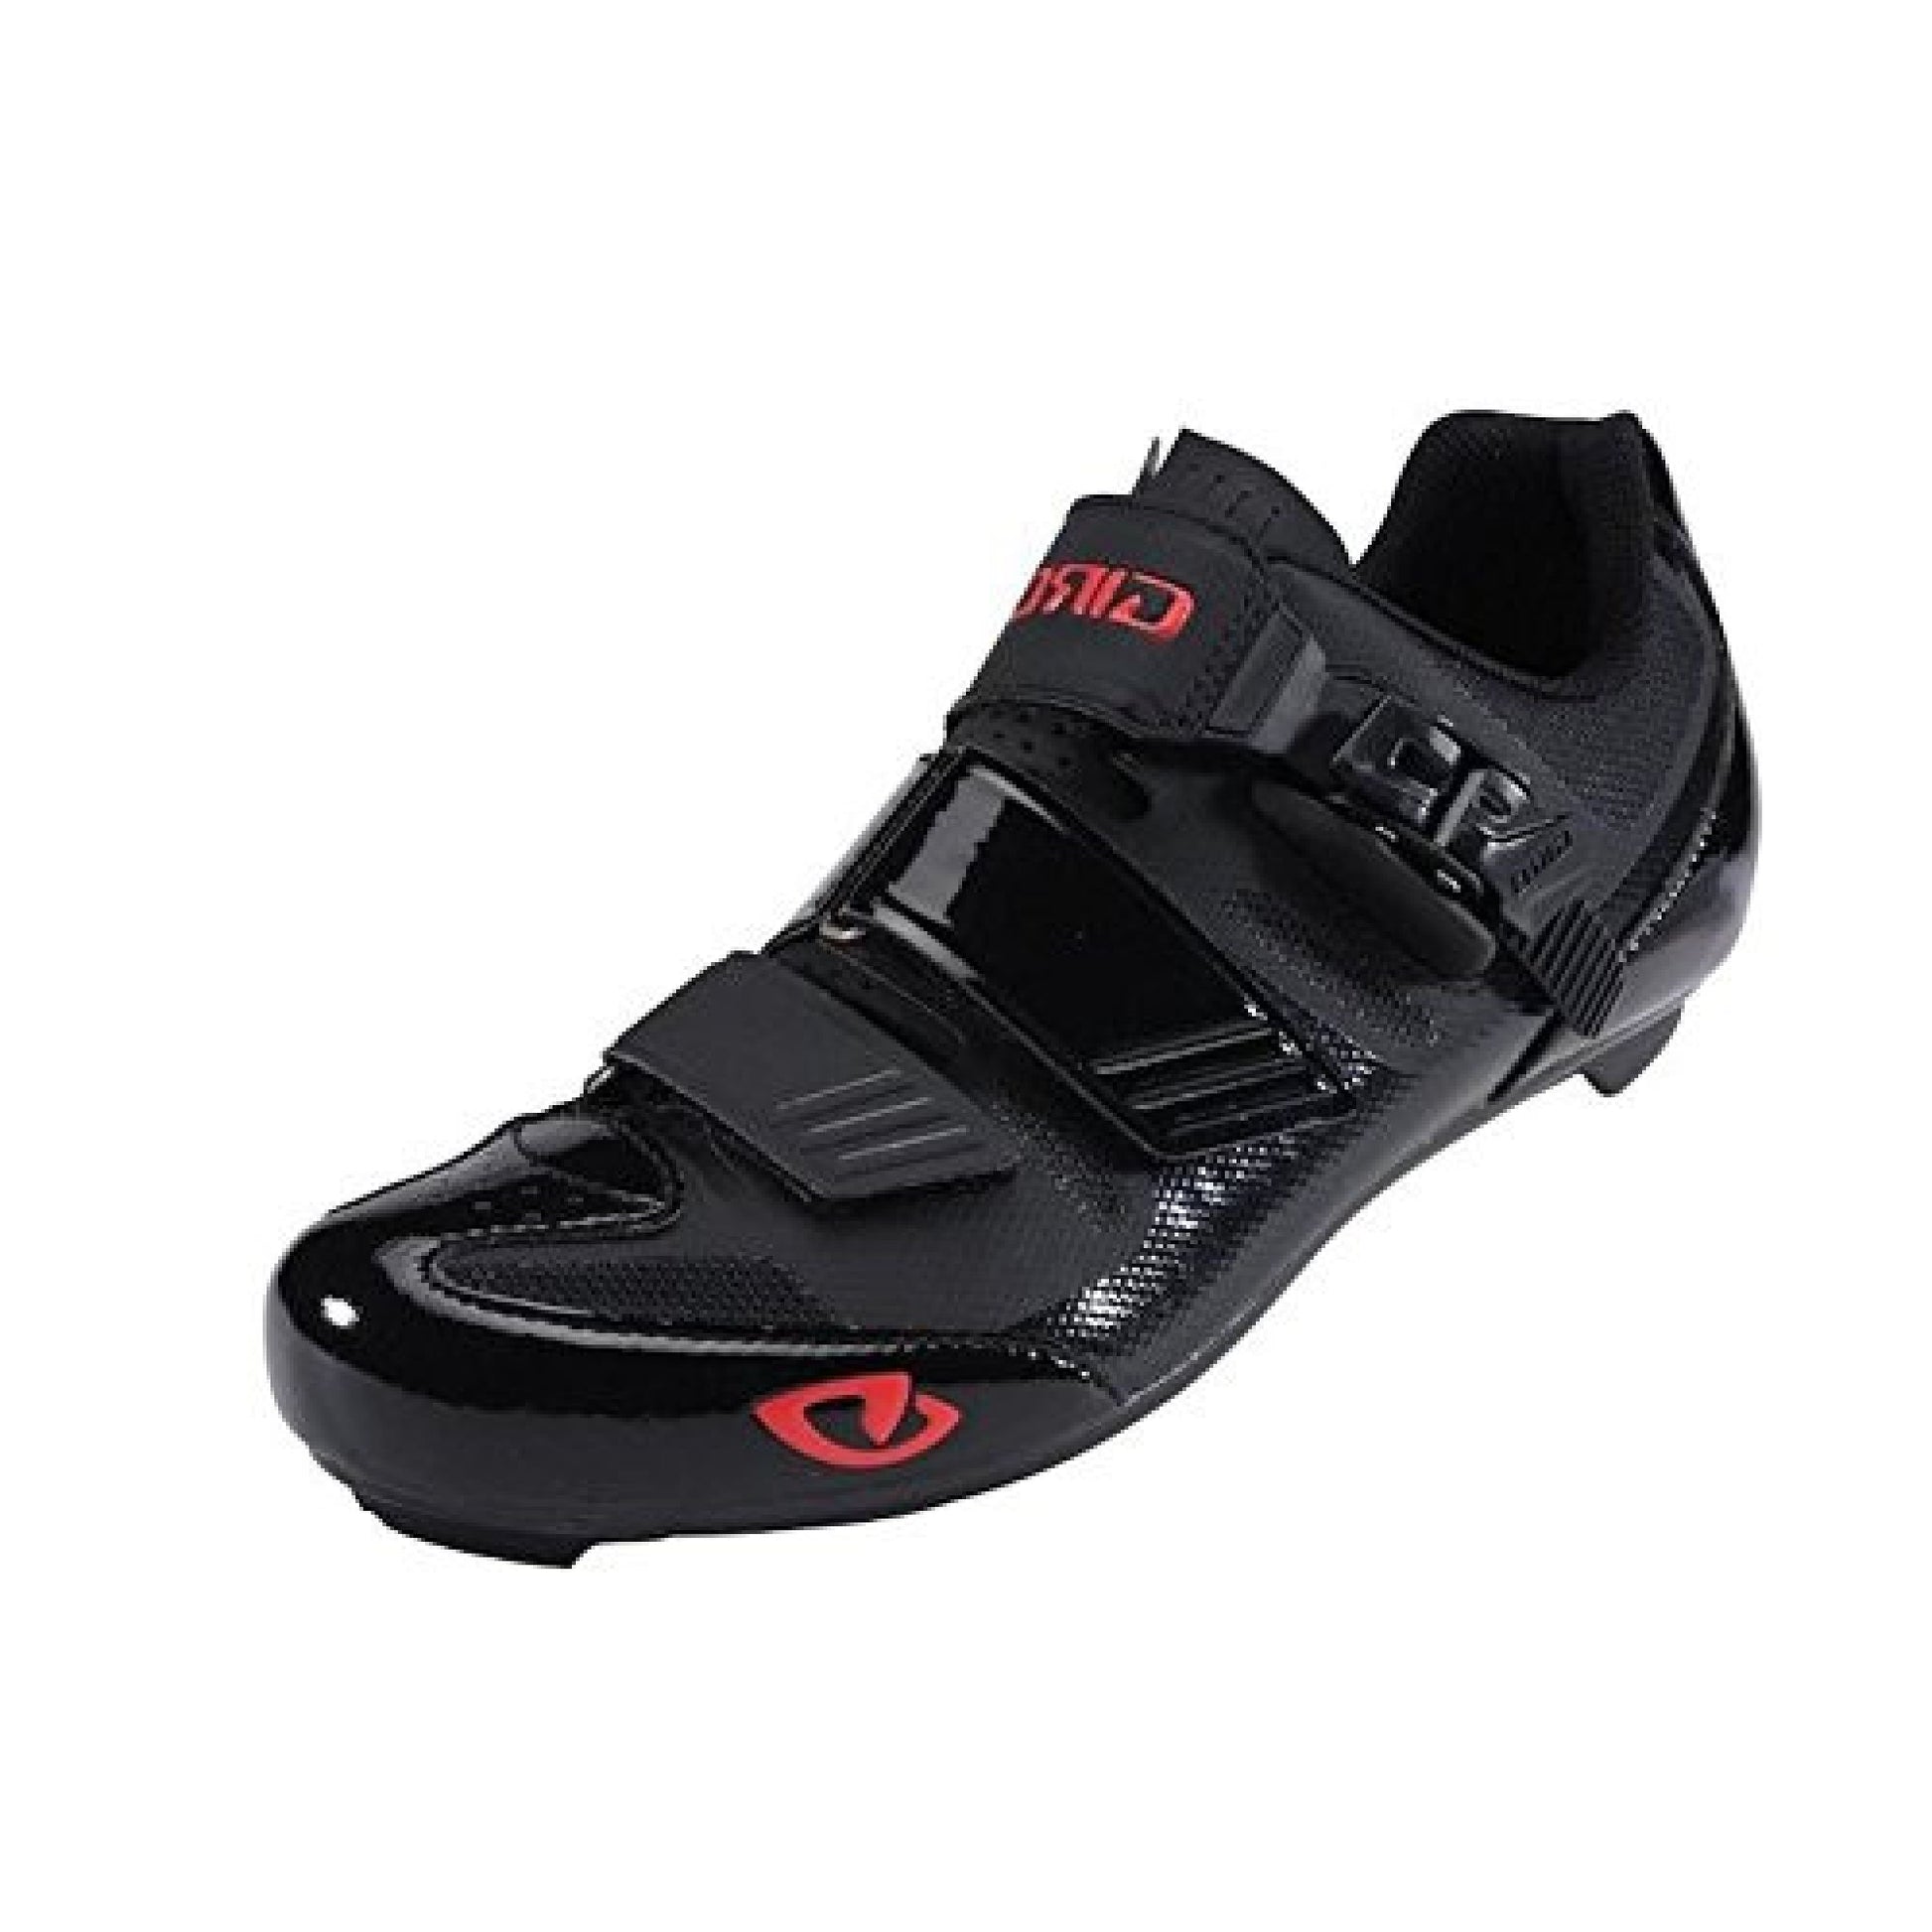 Giro Apeckx II HV Shoe Black Bright Red 41.5 - Giro Bike Bike Shoes